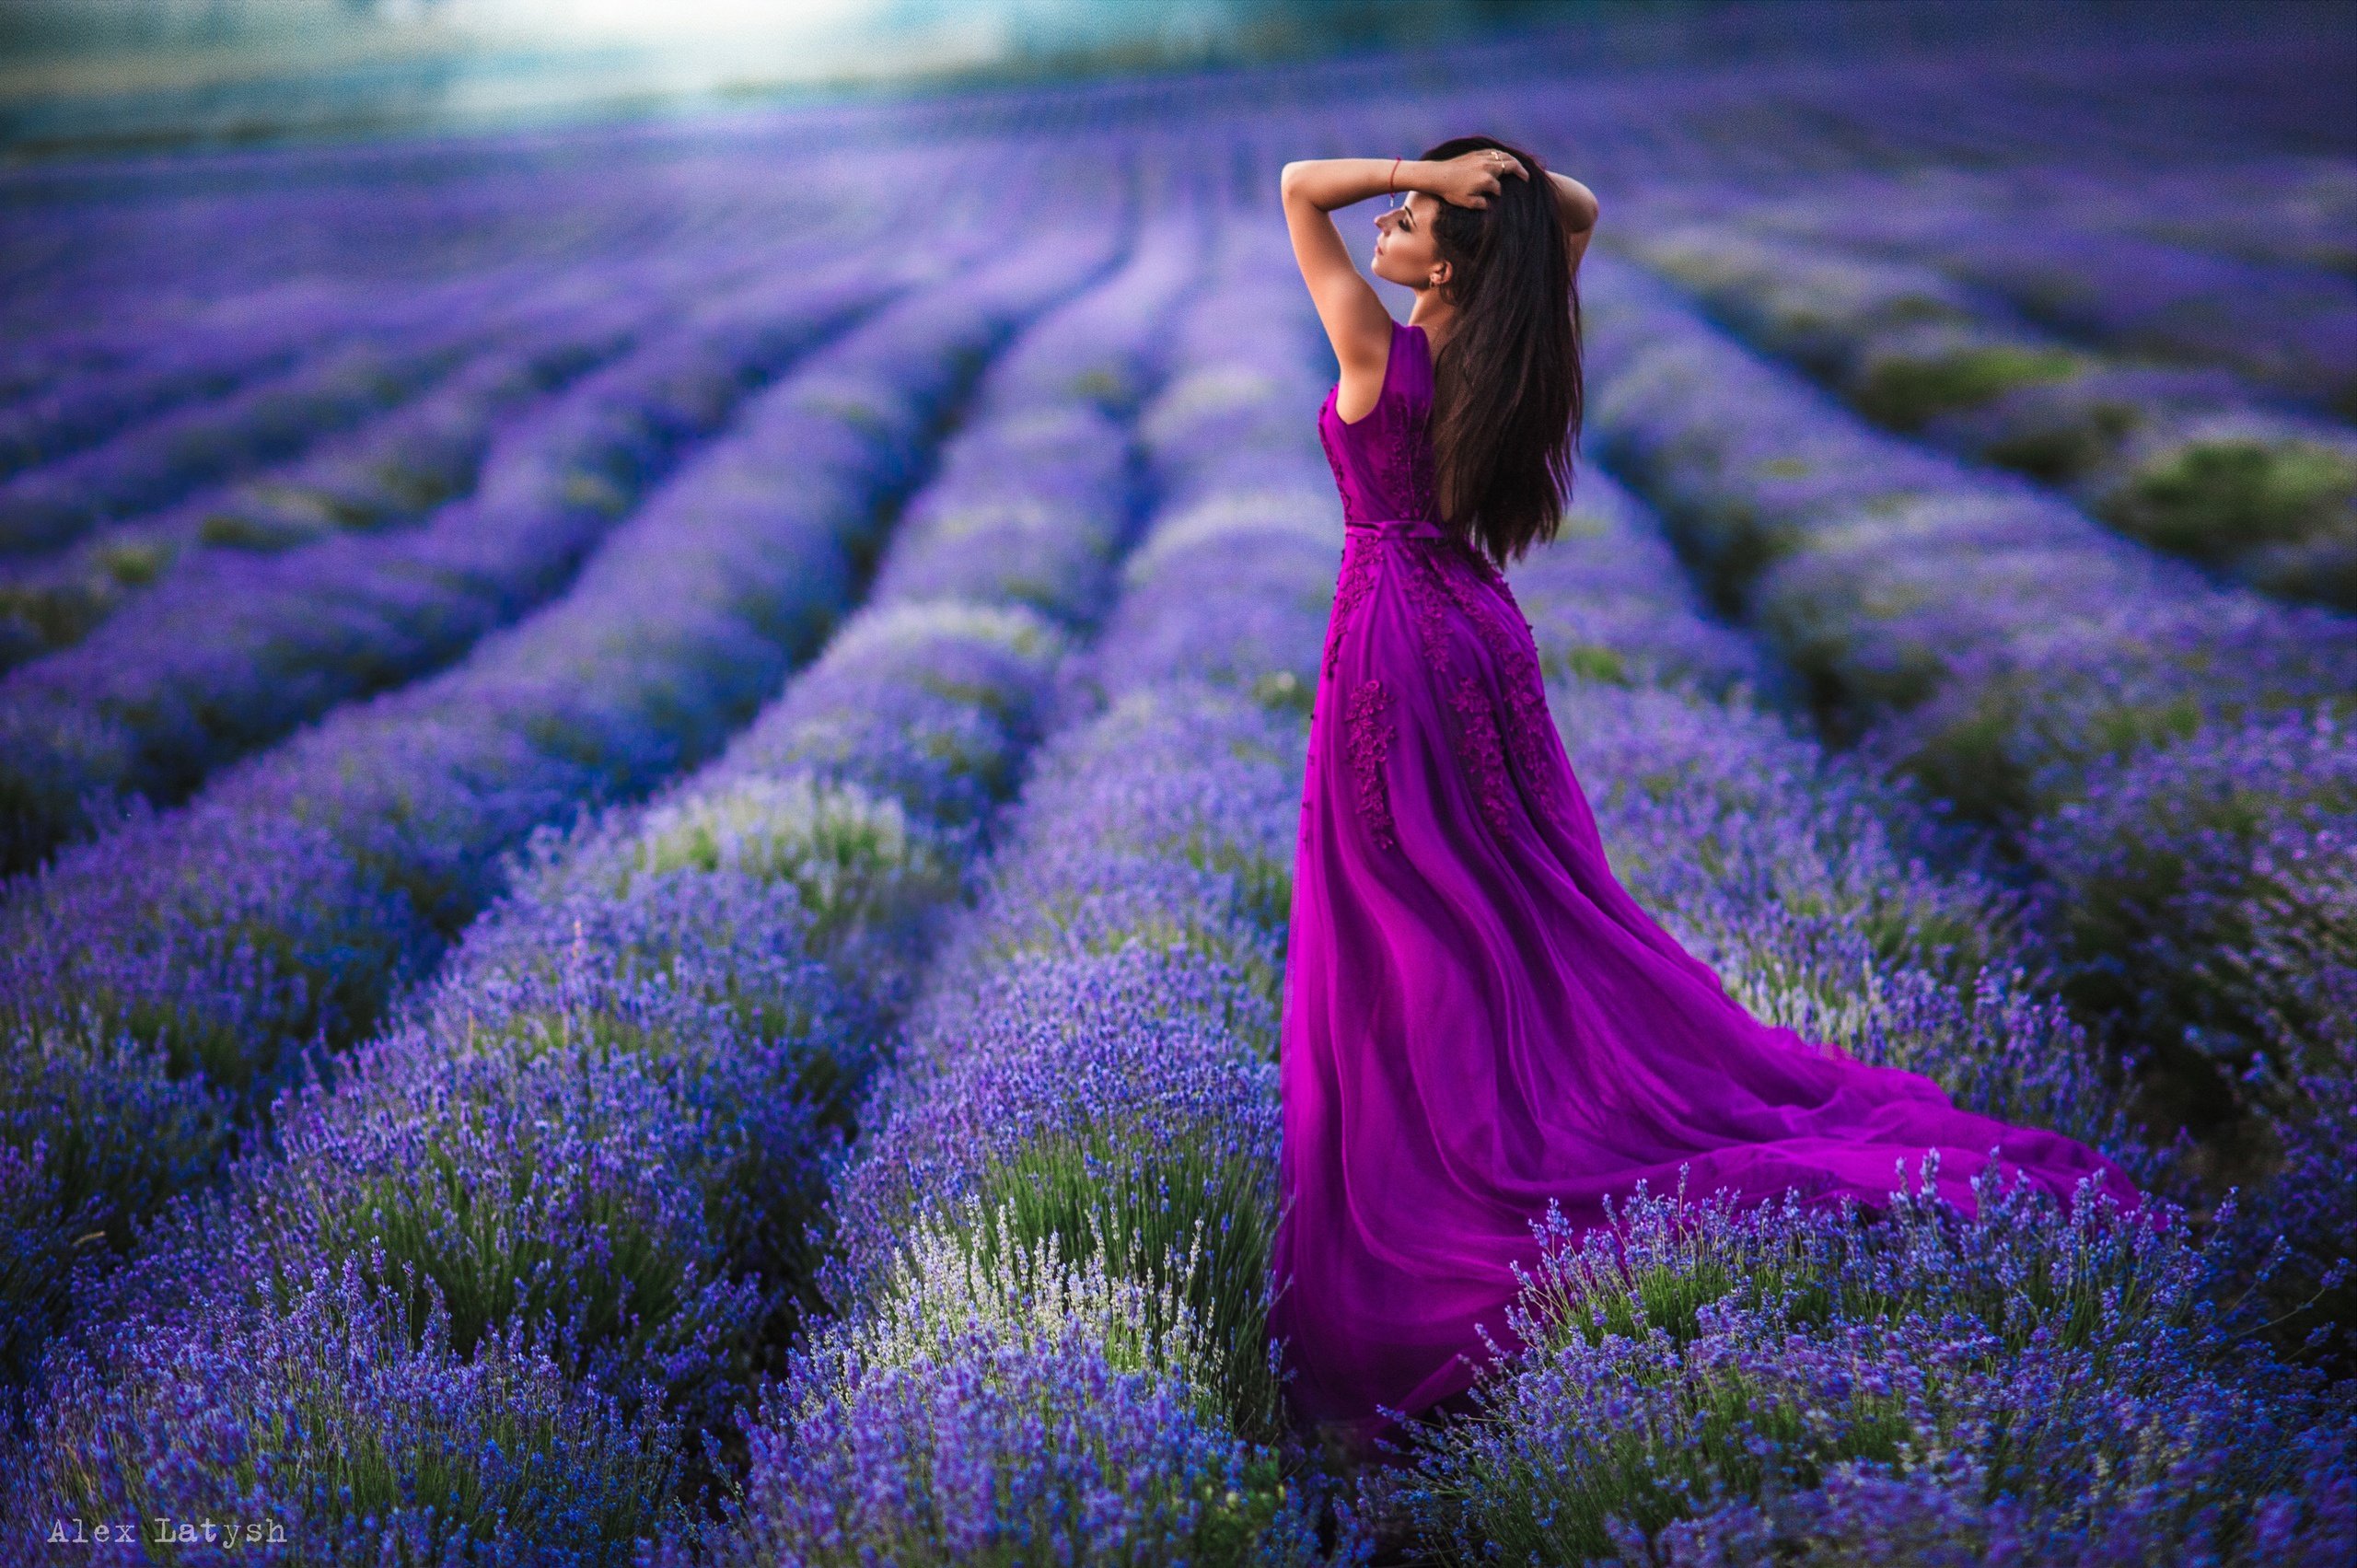 Field Plants Women Dress Women Outdoors Arms Up Model Brunette Lavender Alex Latysh 2560x1703